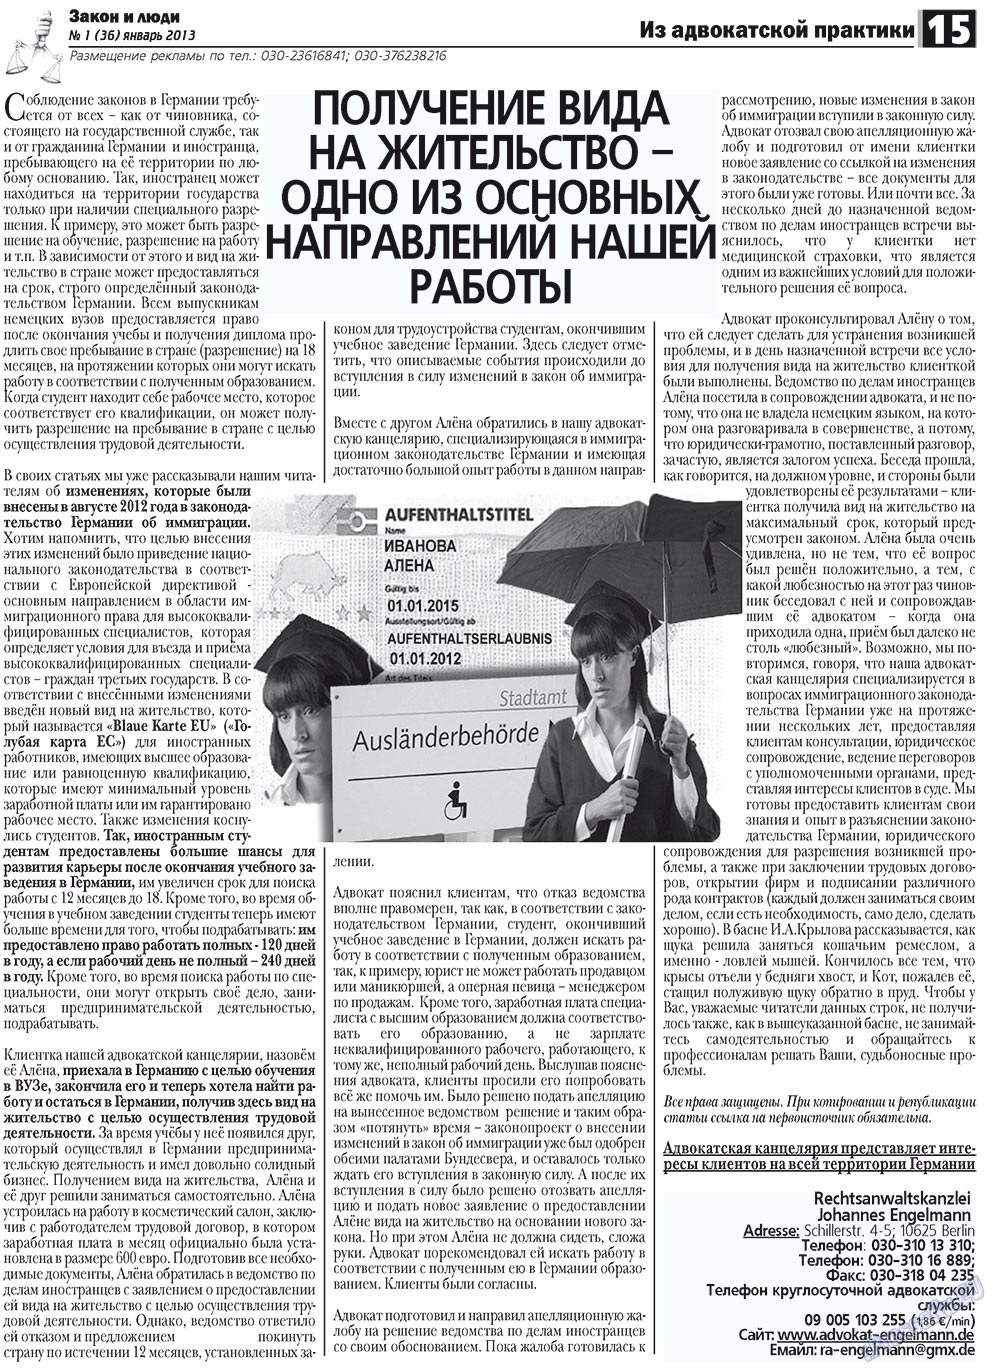 Закон и люди, газета. 2013 №1 стр.15